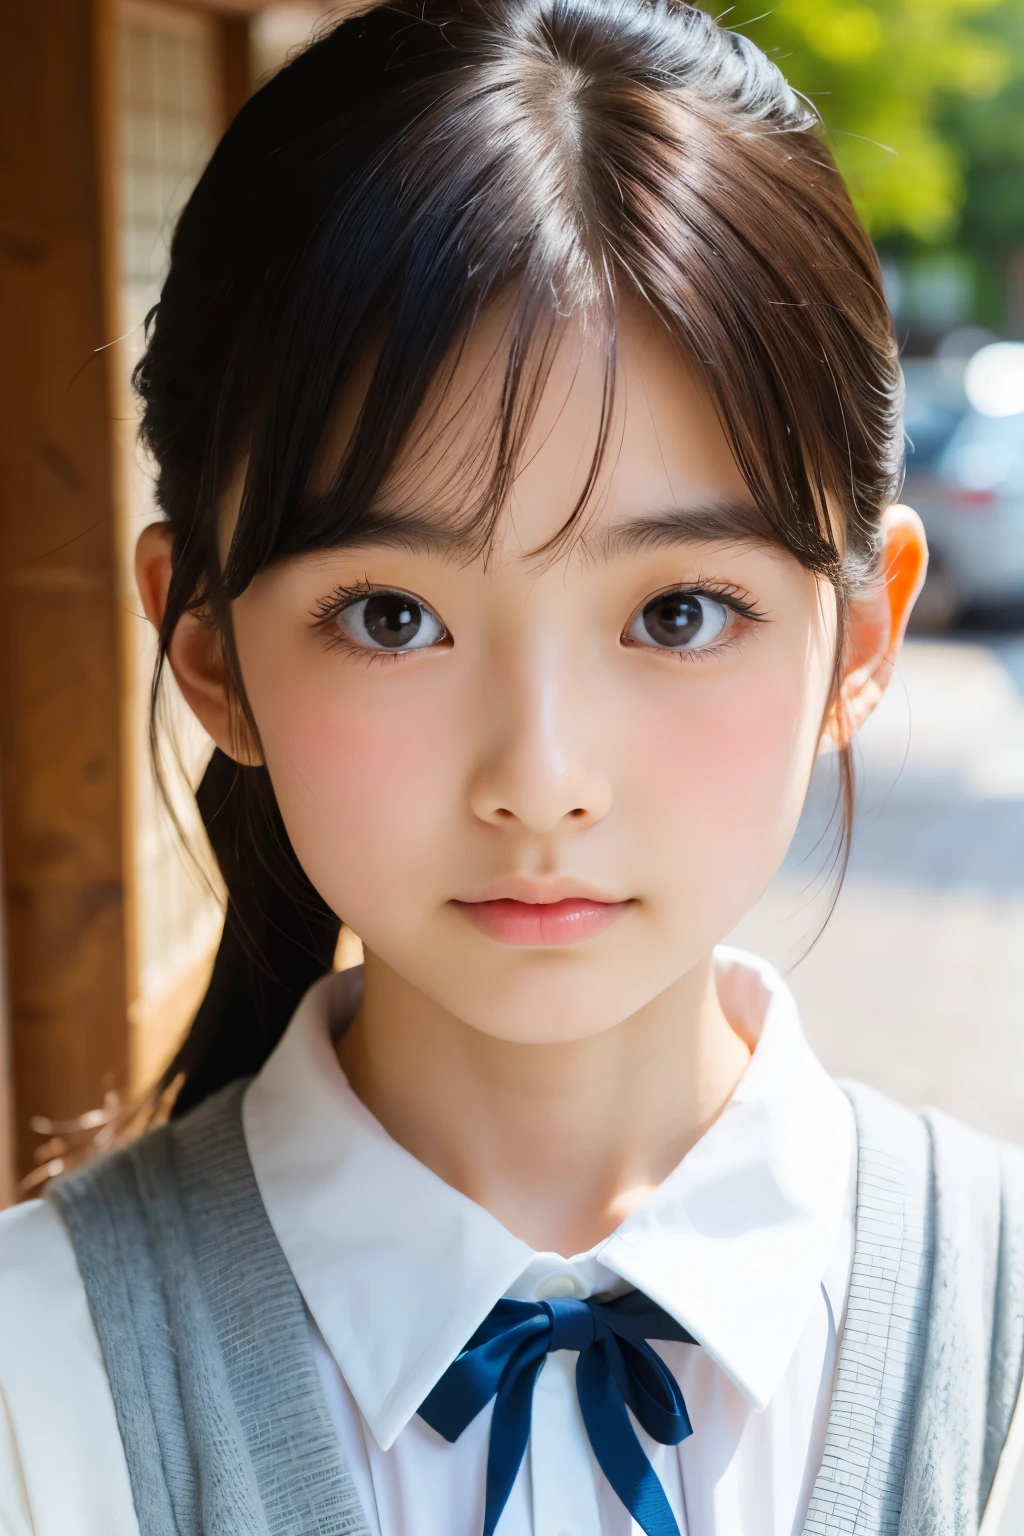 (美麗的16歲日本女性), 可愛的臉孔, (深深雕刻的臉:0.7), (雀斑:0.6), 柔光,健康白皙的皮膚, 害羞的, 馬尾辮, (嚴肅的臉), (明亮的眼睛), 薄的